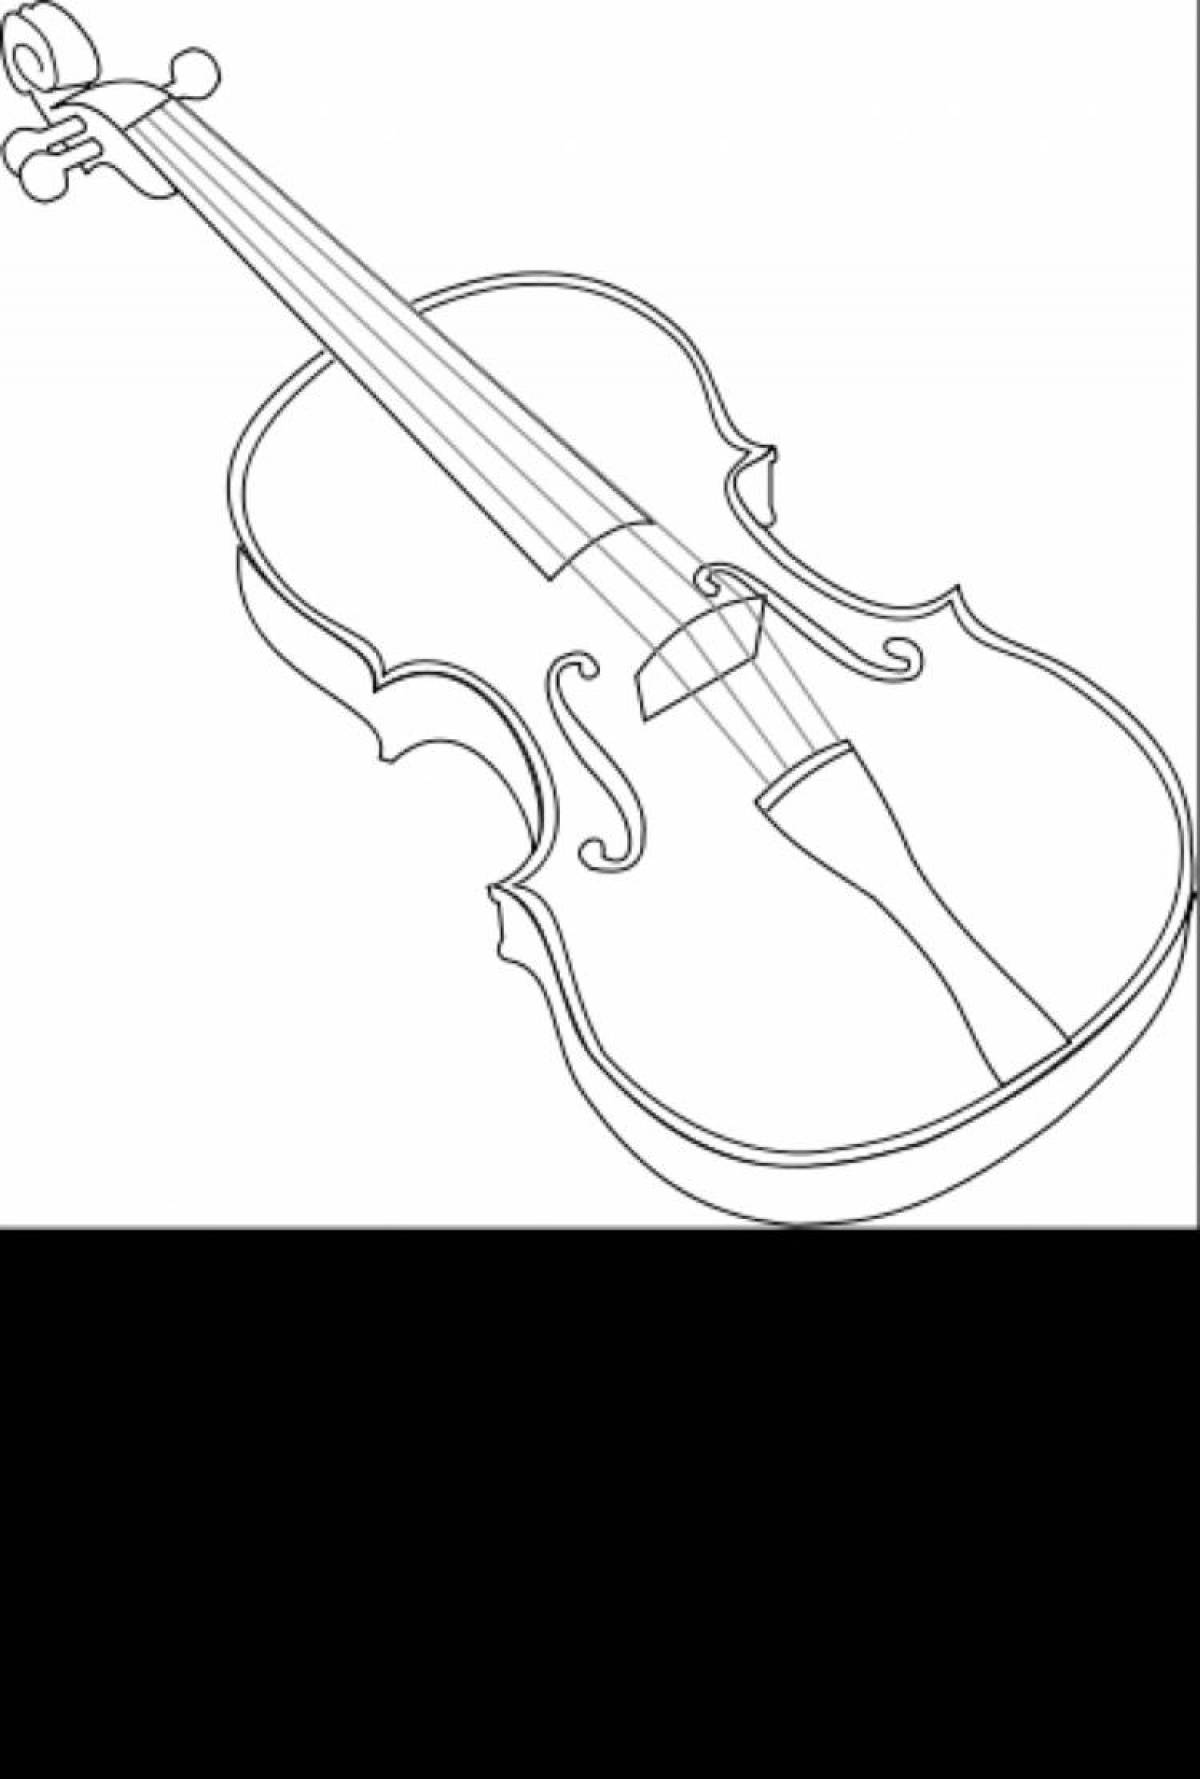 Скрипка для раскрашивания